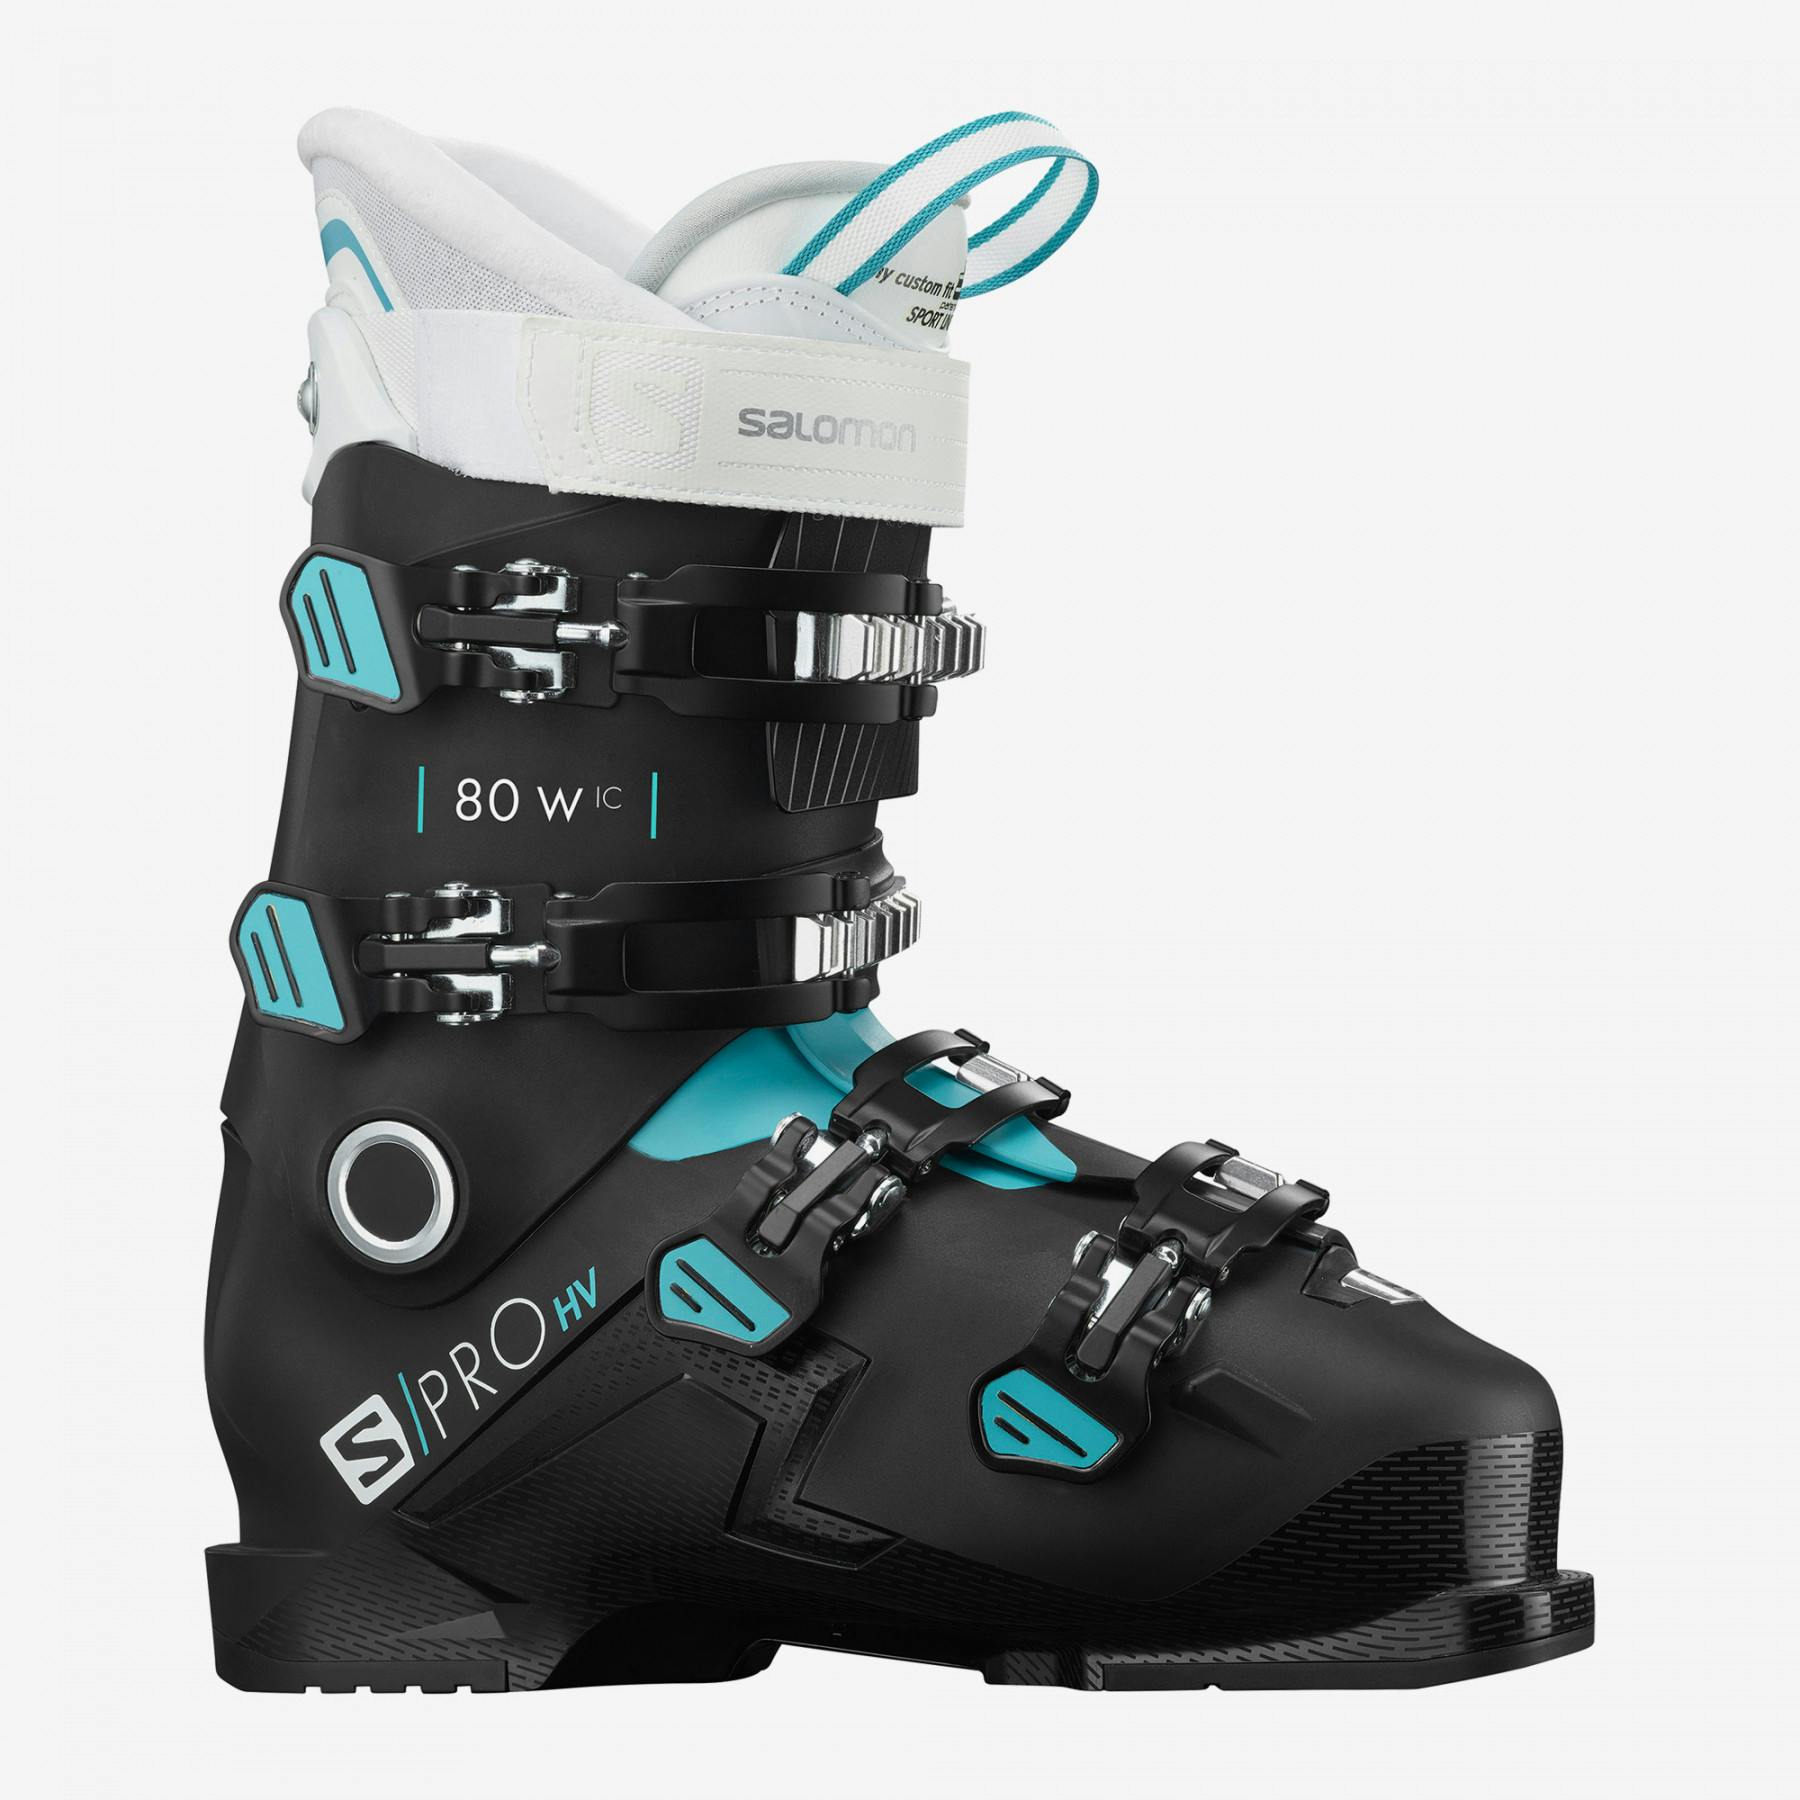 Salomon S/pro HV 80 IC Ski Boots Women's · 2021